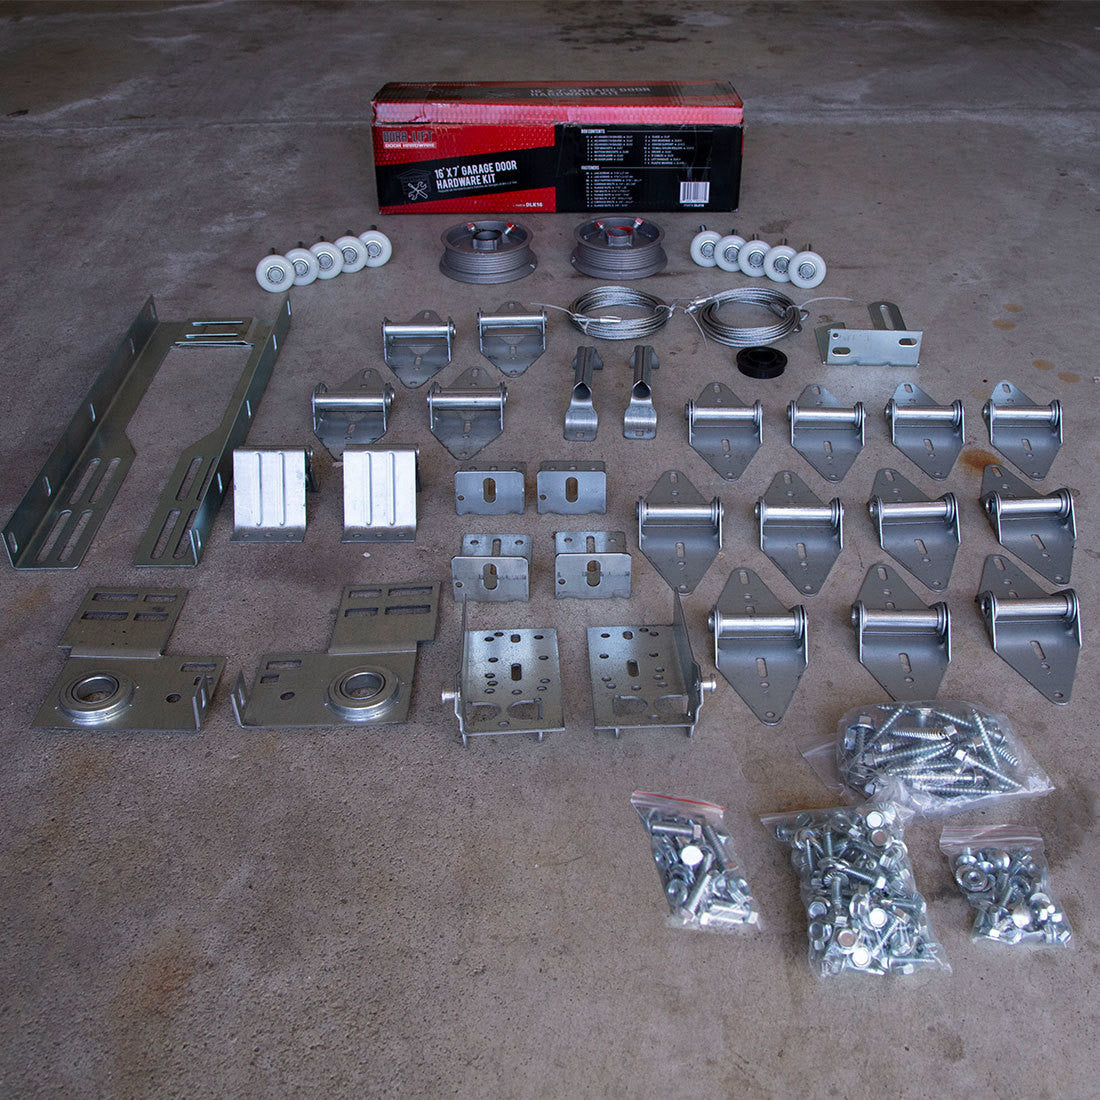 DURA-LIFT 16' x 7' Garage Door Premium Hardware Parts Installation Box